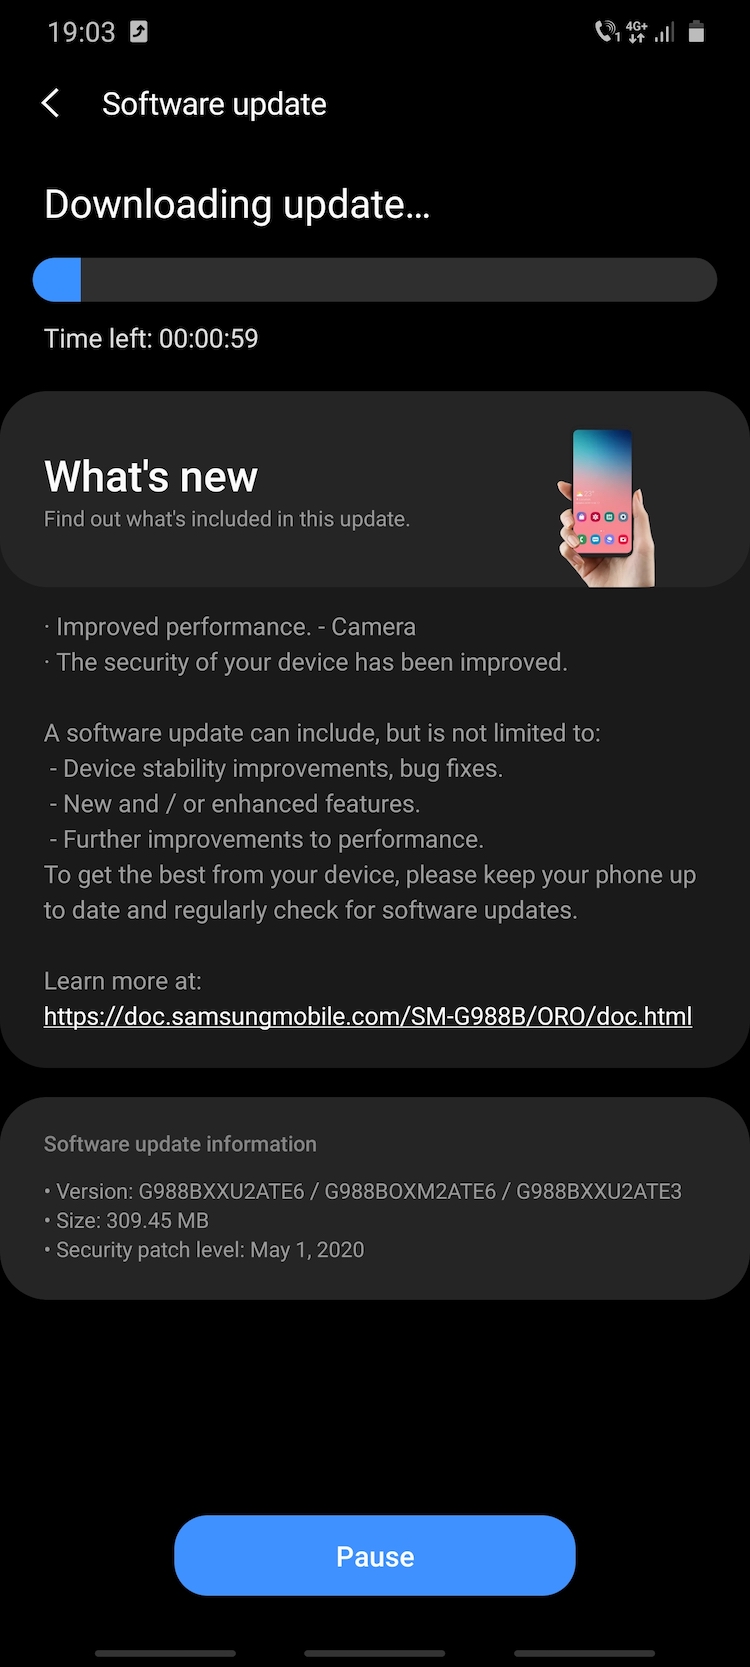 Update-ul G988VXXU2ATE6/G988BOXM2ATE6/G988BXXU2ATE3 aduce patch-urile de securitate Android pentru luna mai 2020 și un mod special ”close-up zoom” pentru camera foto.